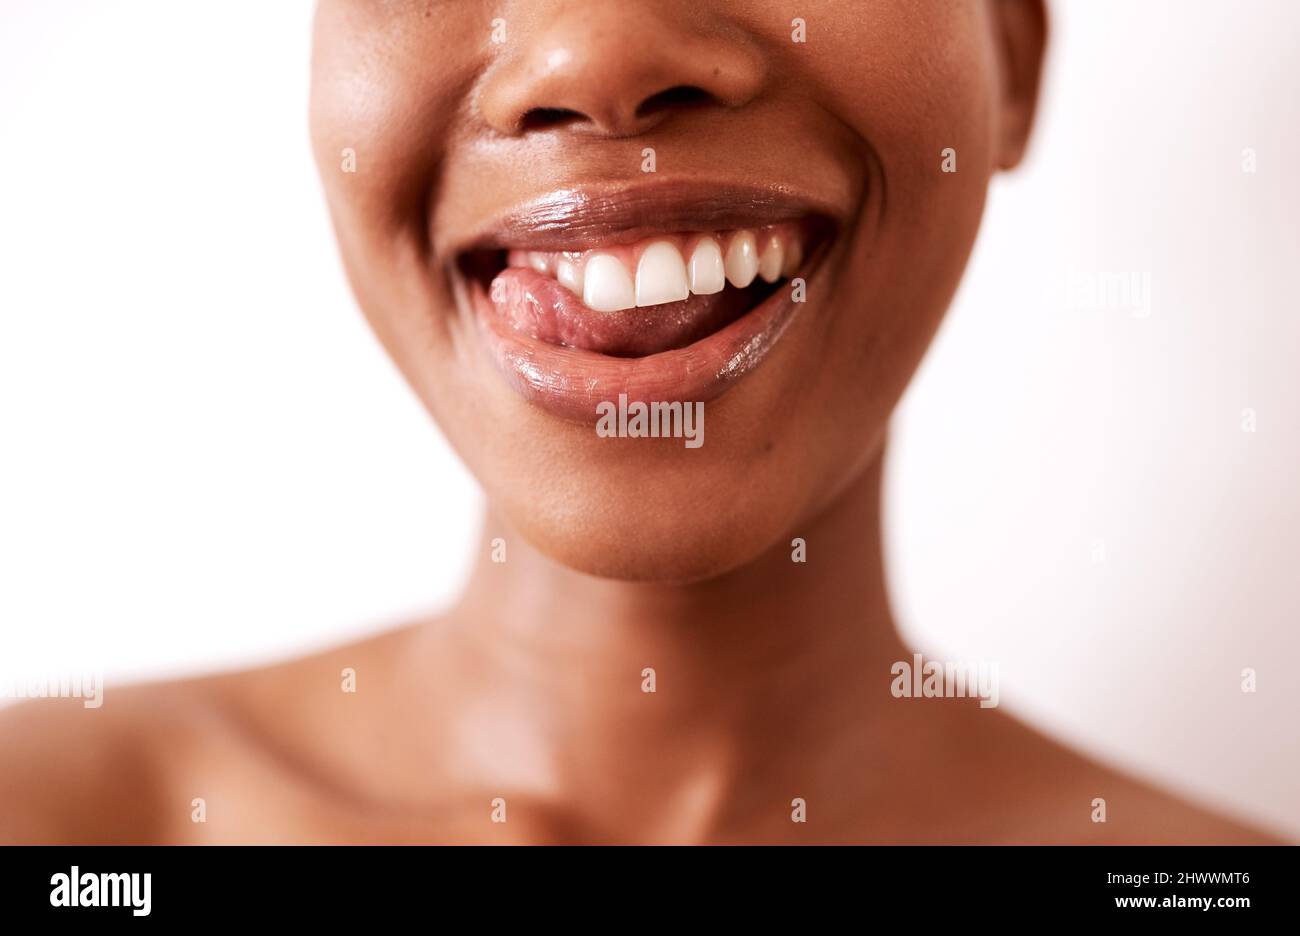 Meine Zähne sahen nie so gut aus. Nahaufnahme einer schönen jungen Frau, die mit glänzenden Lippen vor weißem Hintergrund posiert. Stockfoto